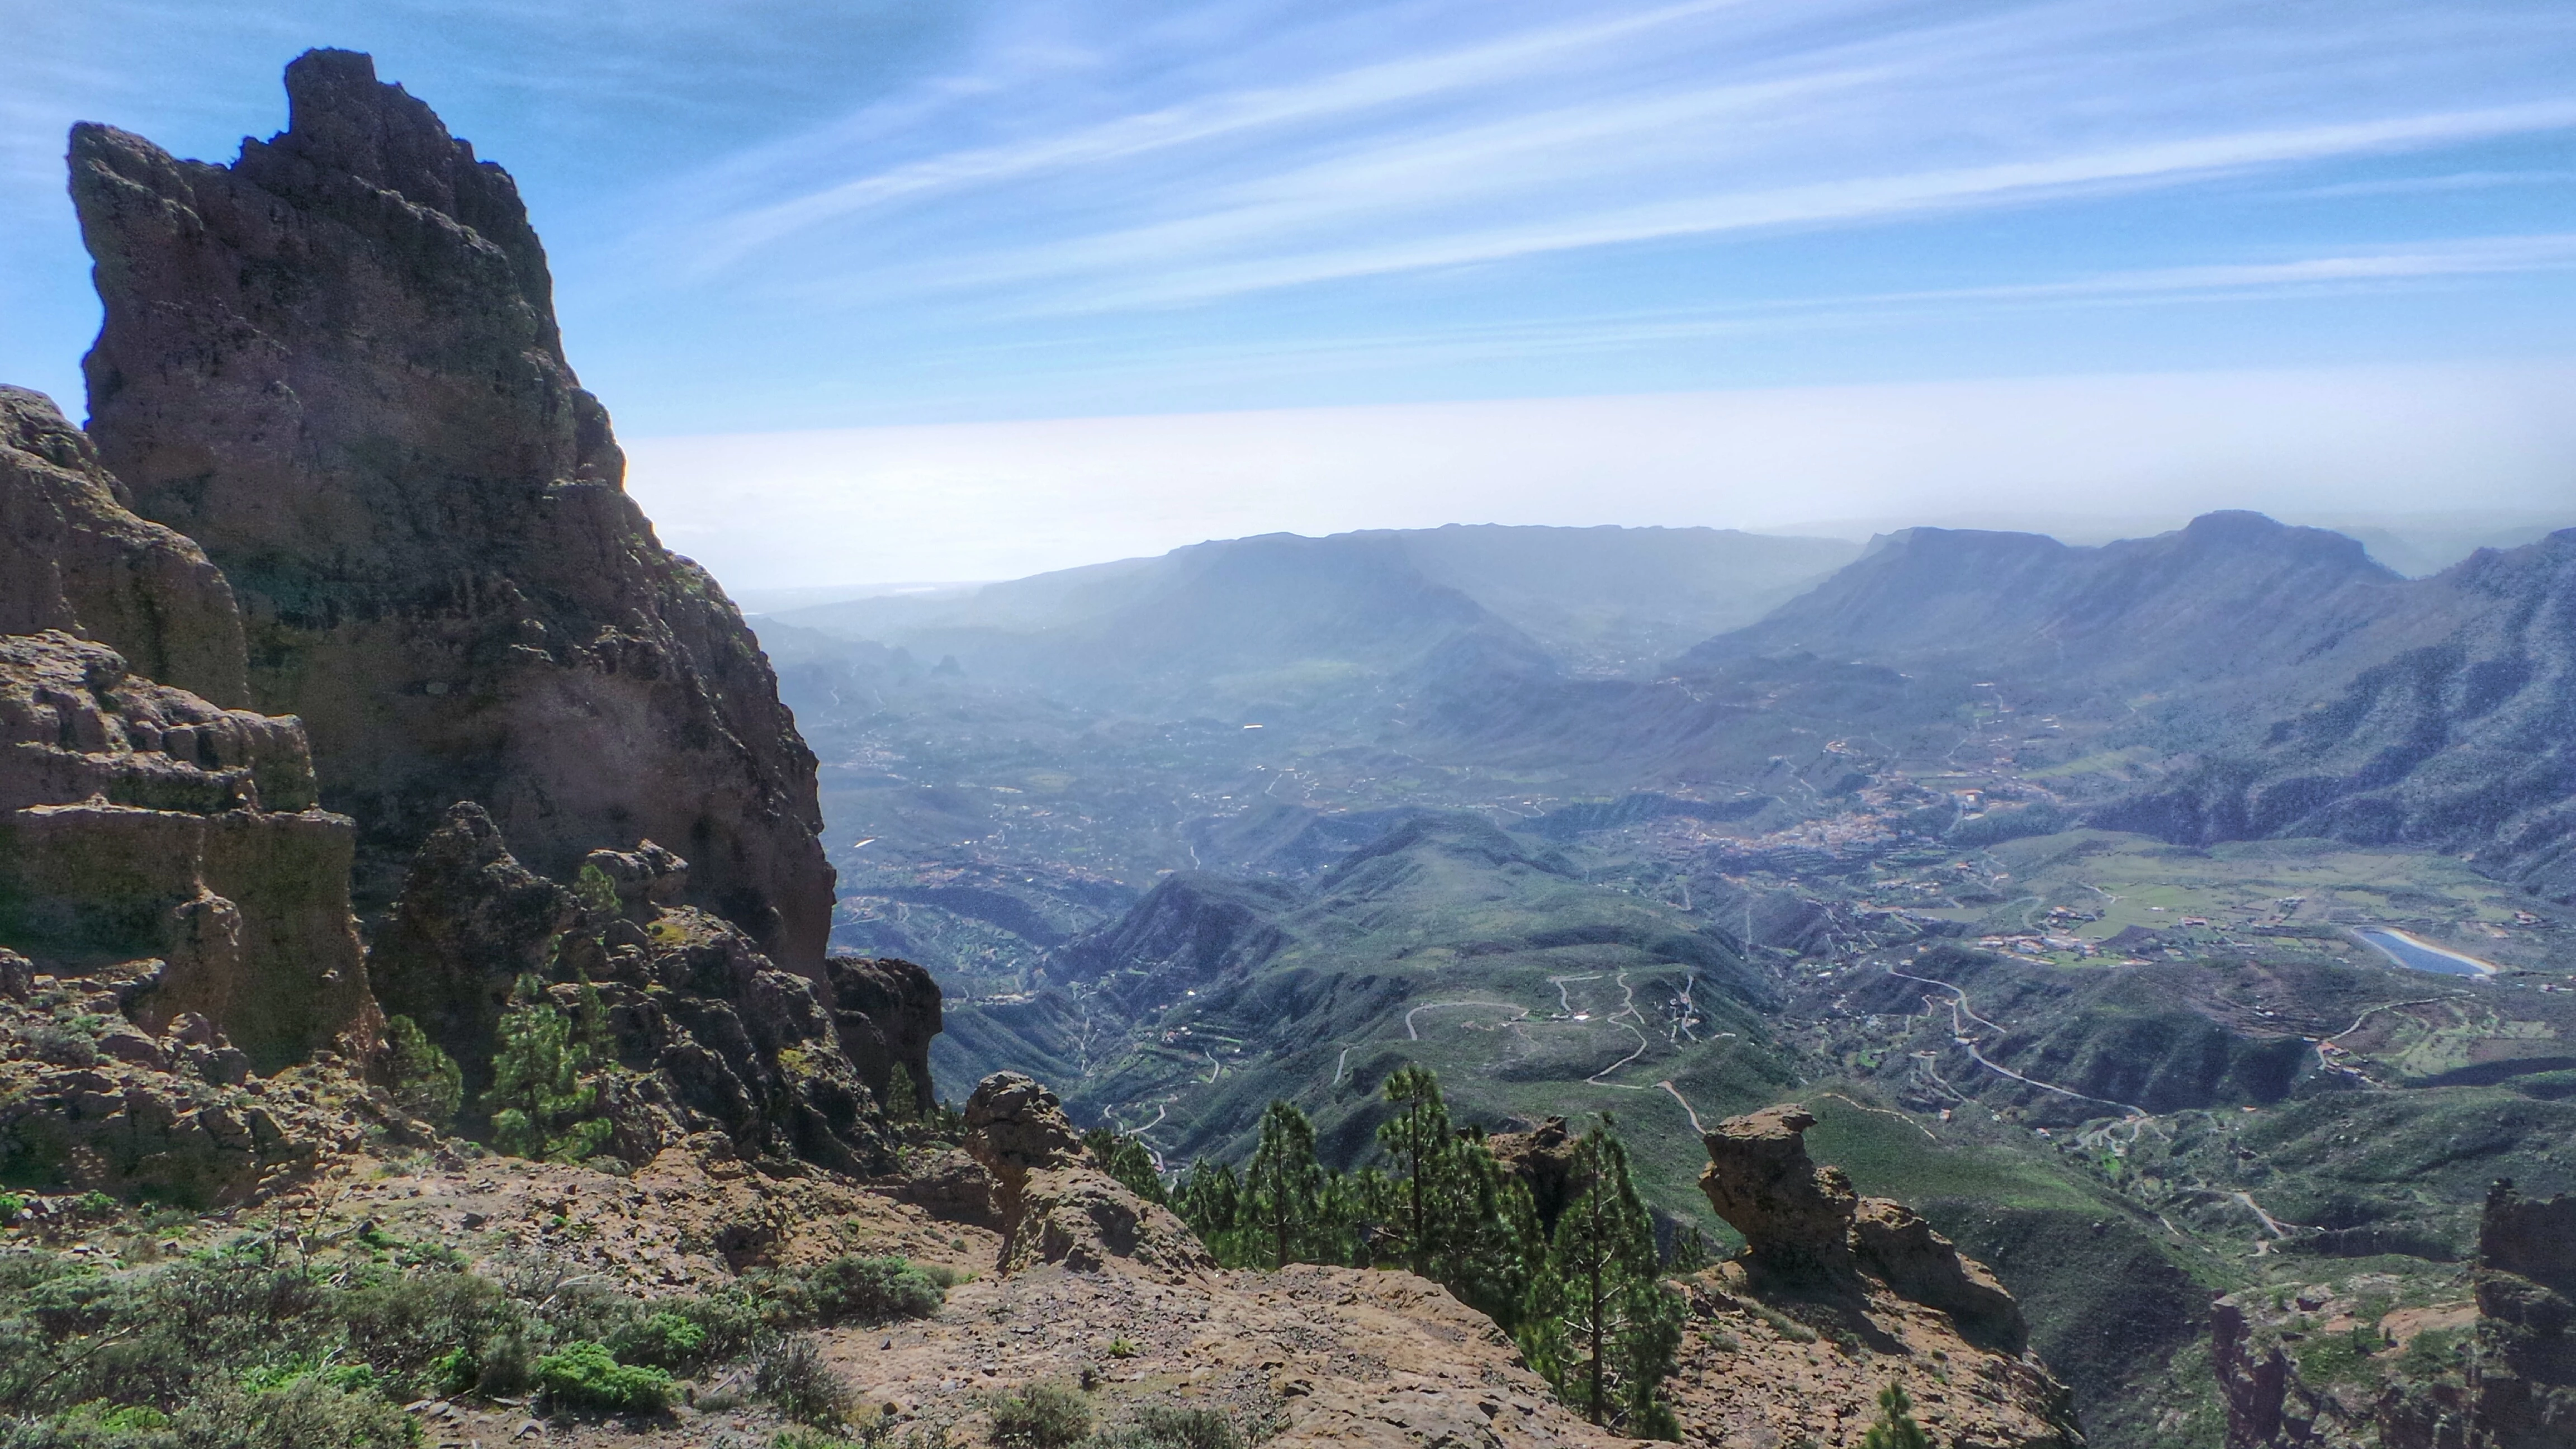 Paisajes de Gran Canaria desde el mirador del Pico de Las Nieves